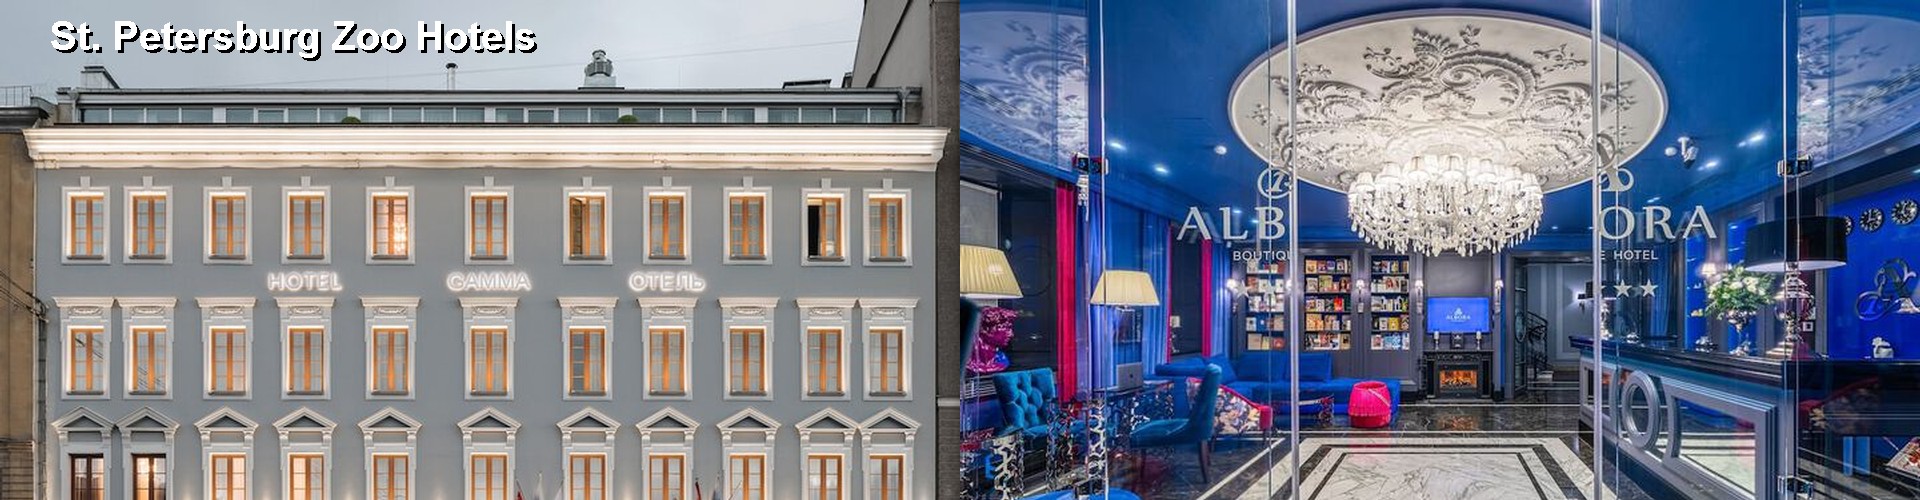 5 Best Hotels near St. Petersburg Zoo